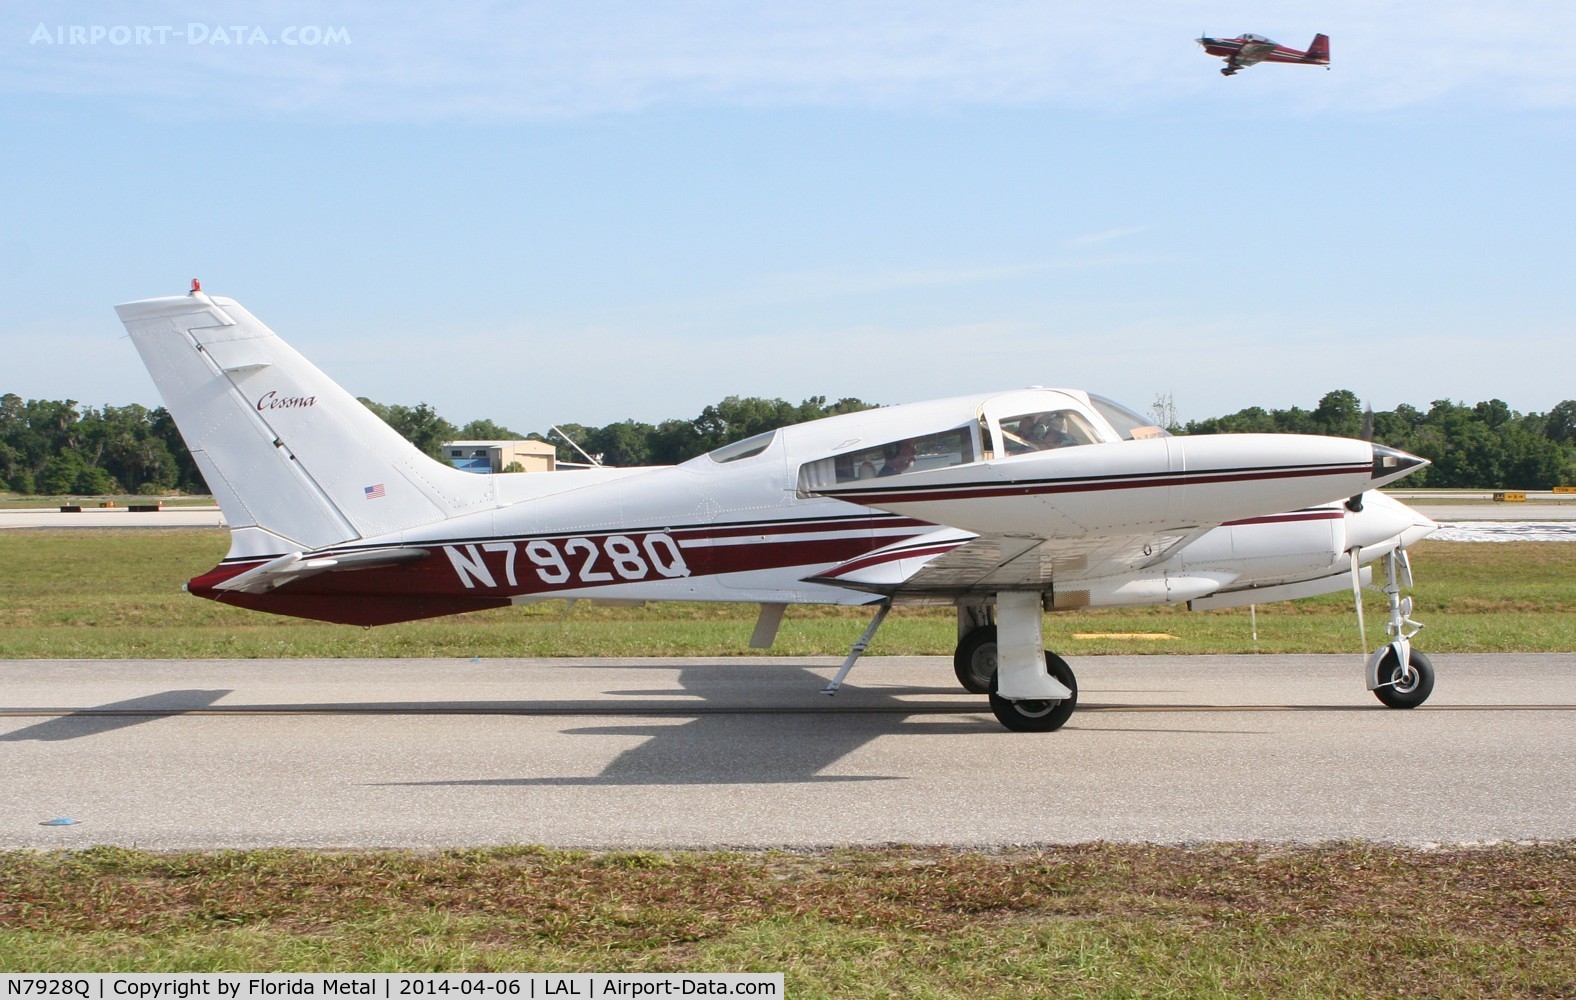 N7928Q, 1972 Cessna 310Q C/N 310Q0621, Cessna 310Q